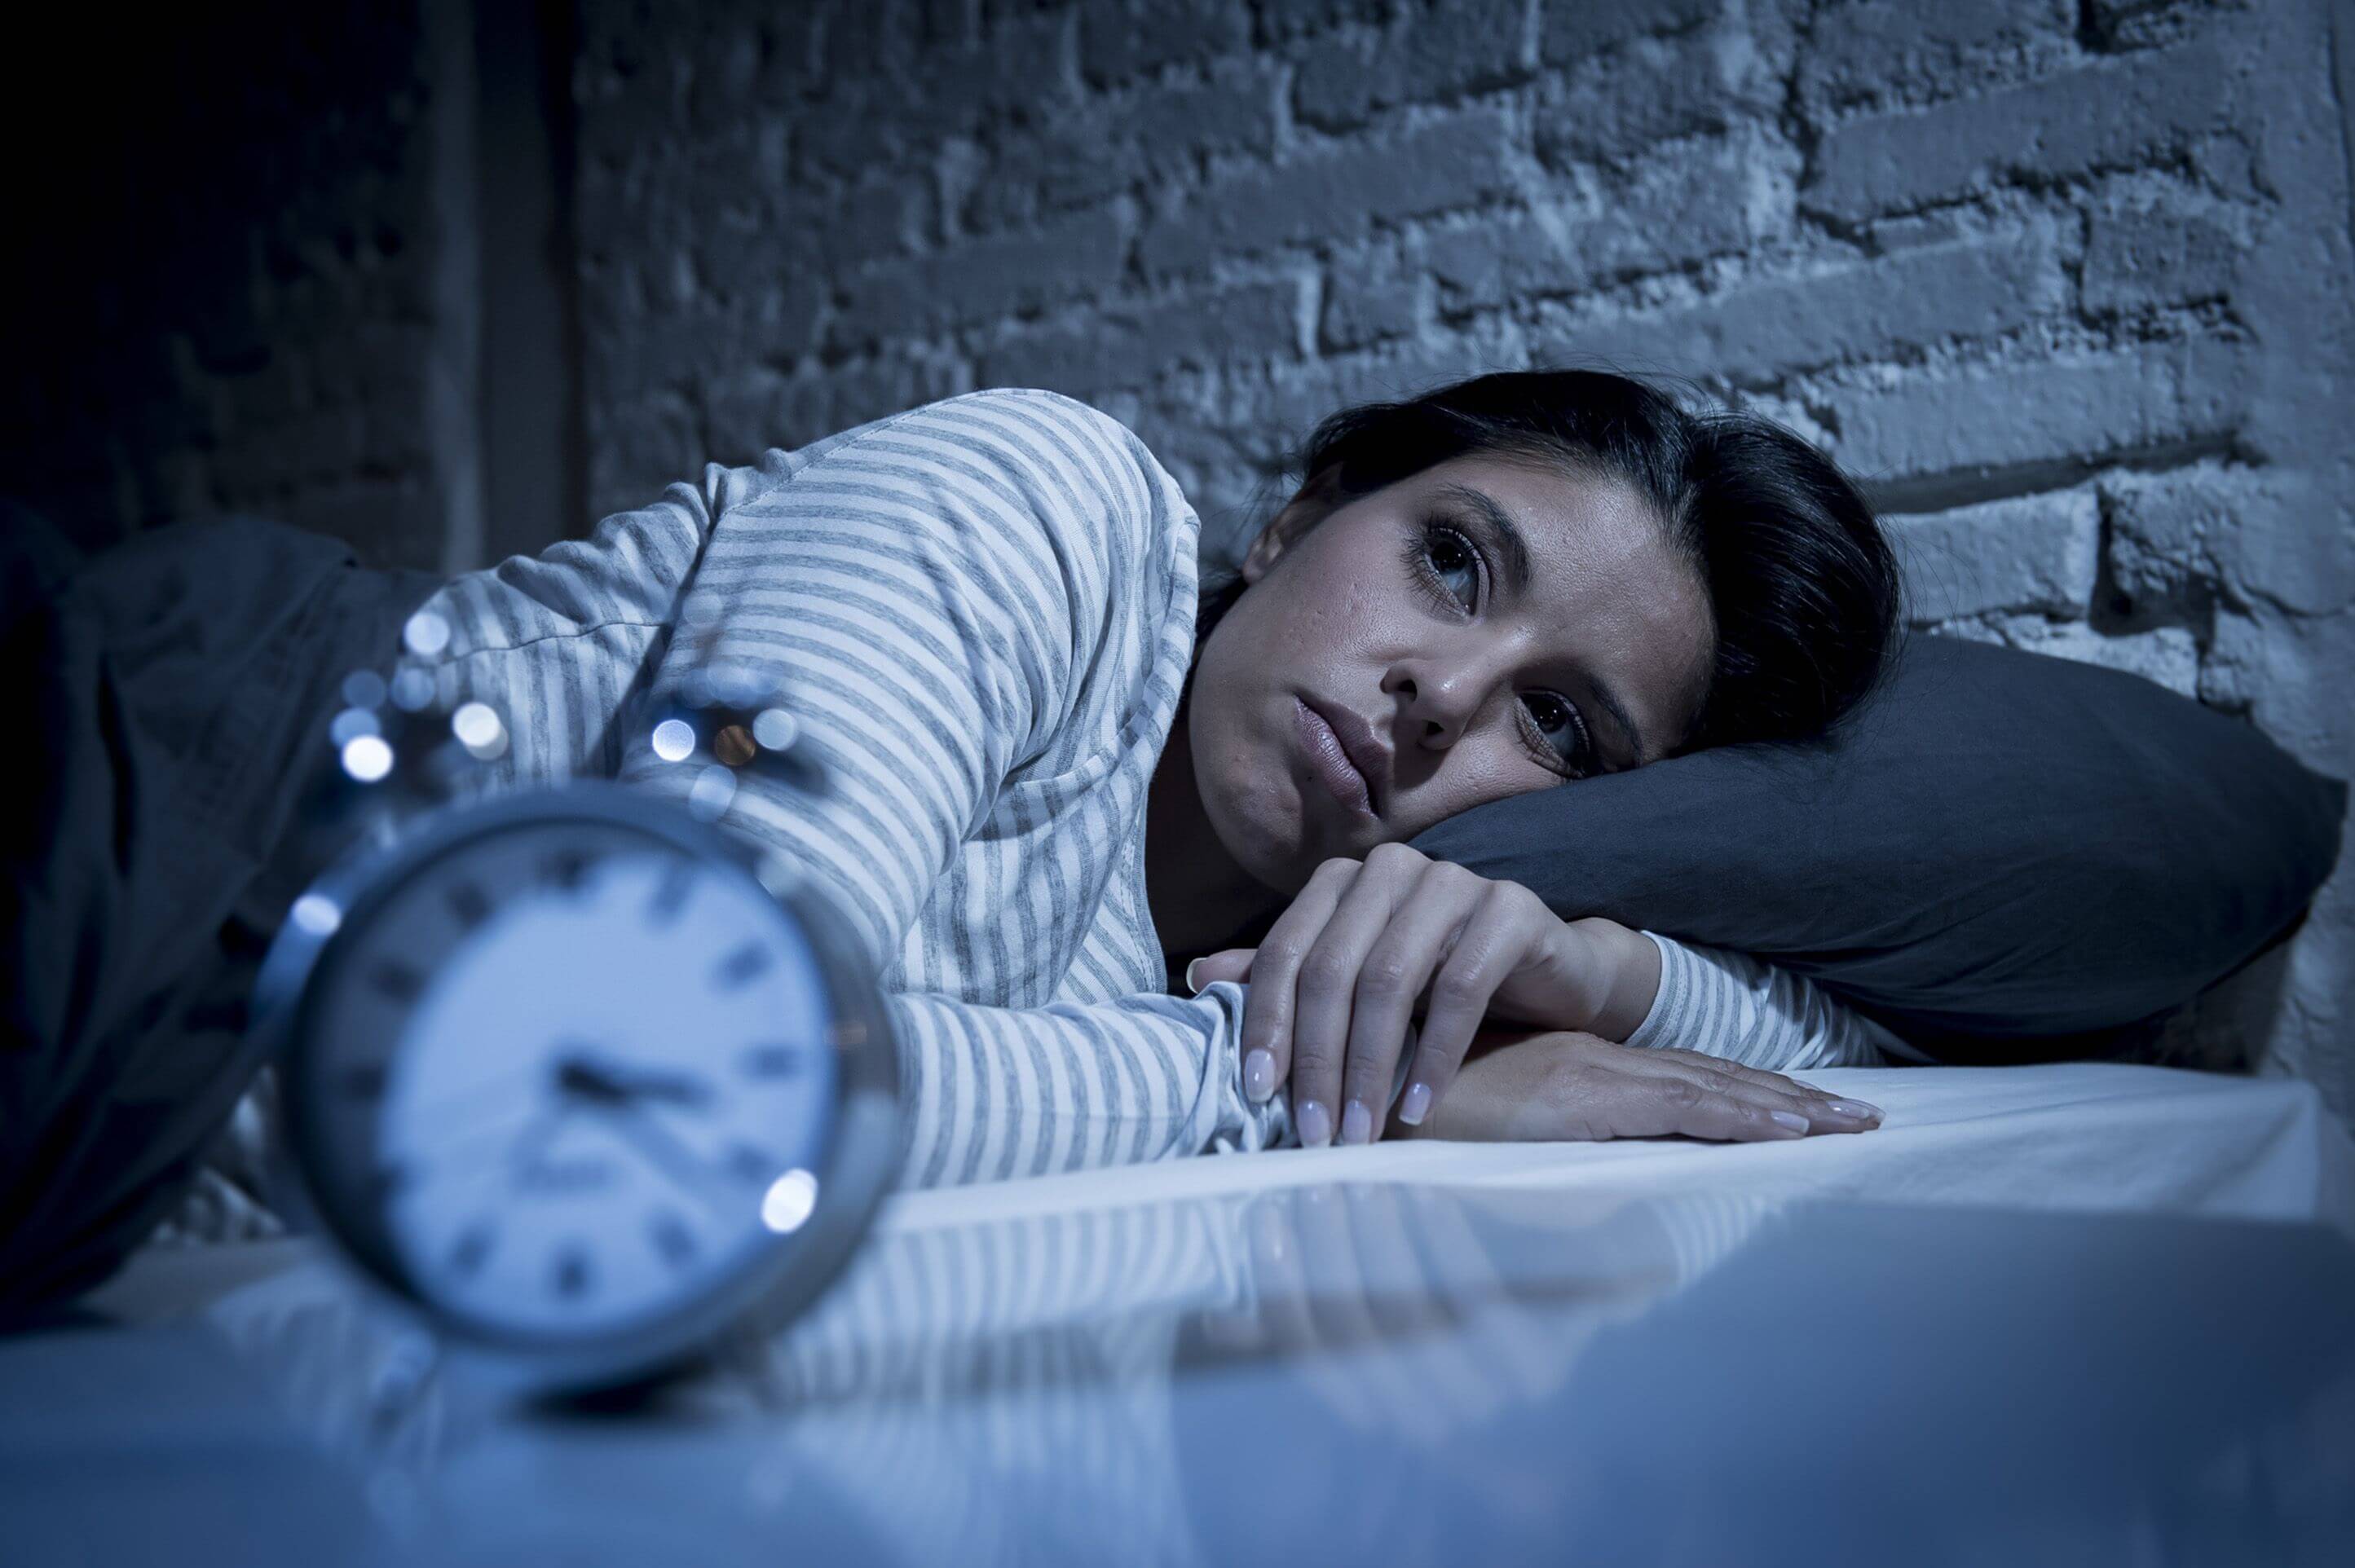 Uykusuzluk riskini artırır, inme ve kalp krizi